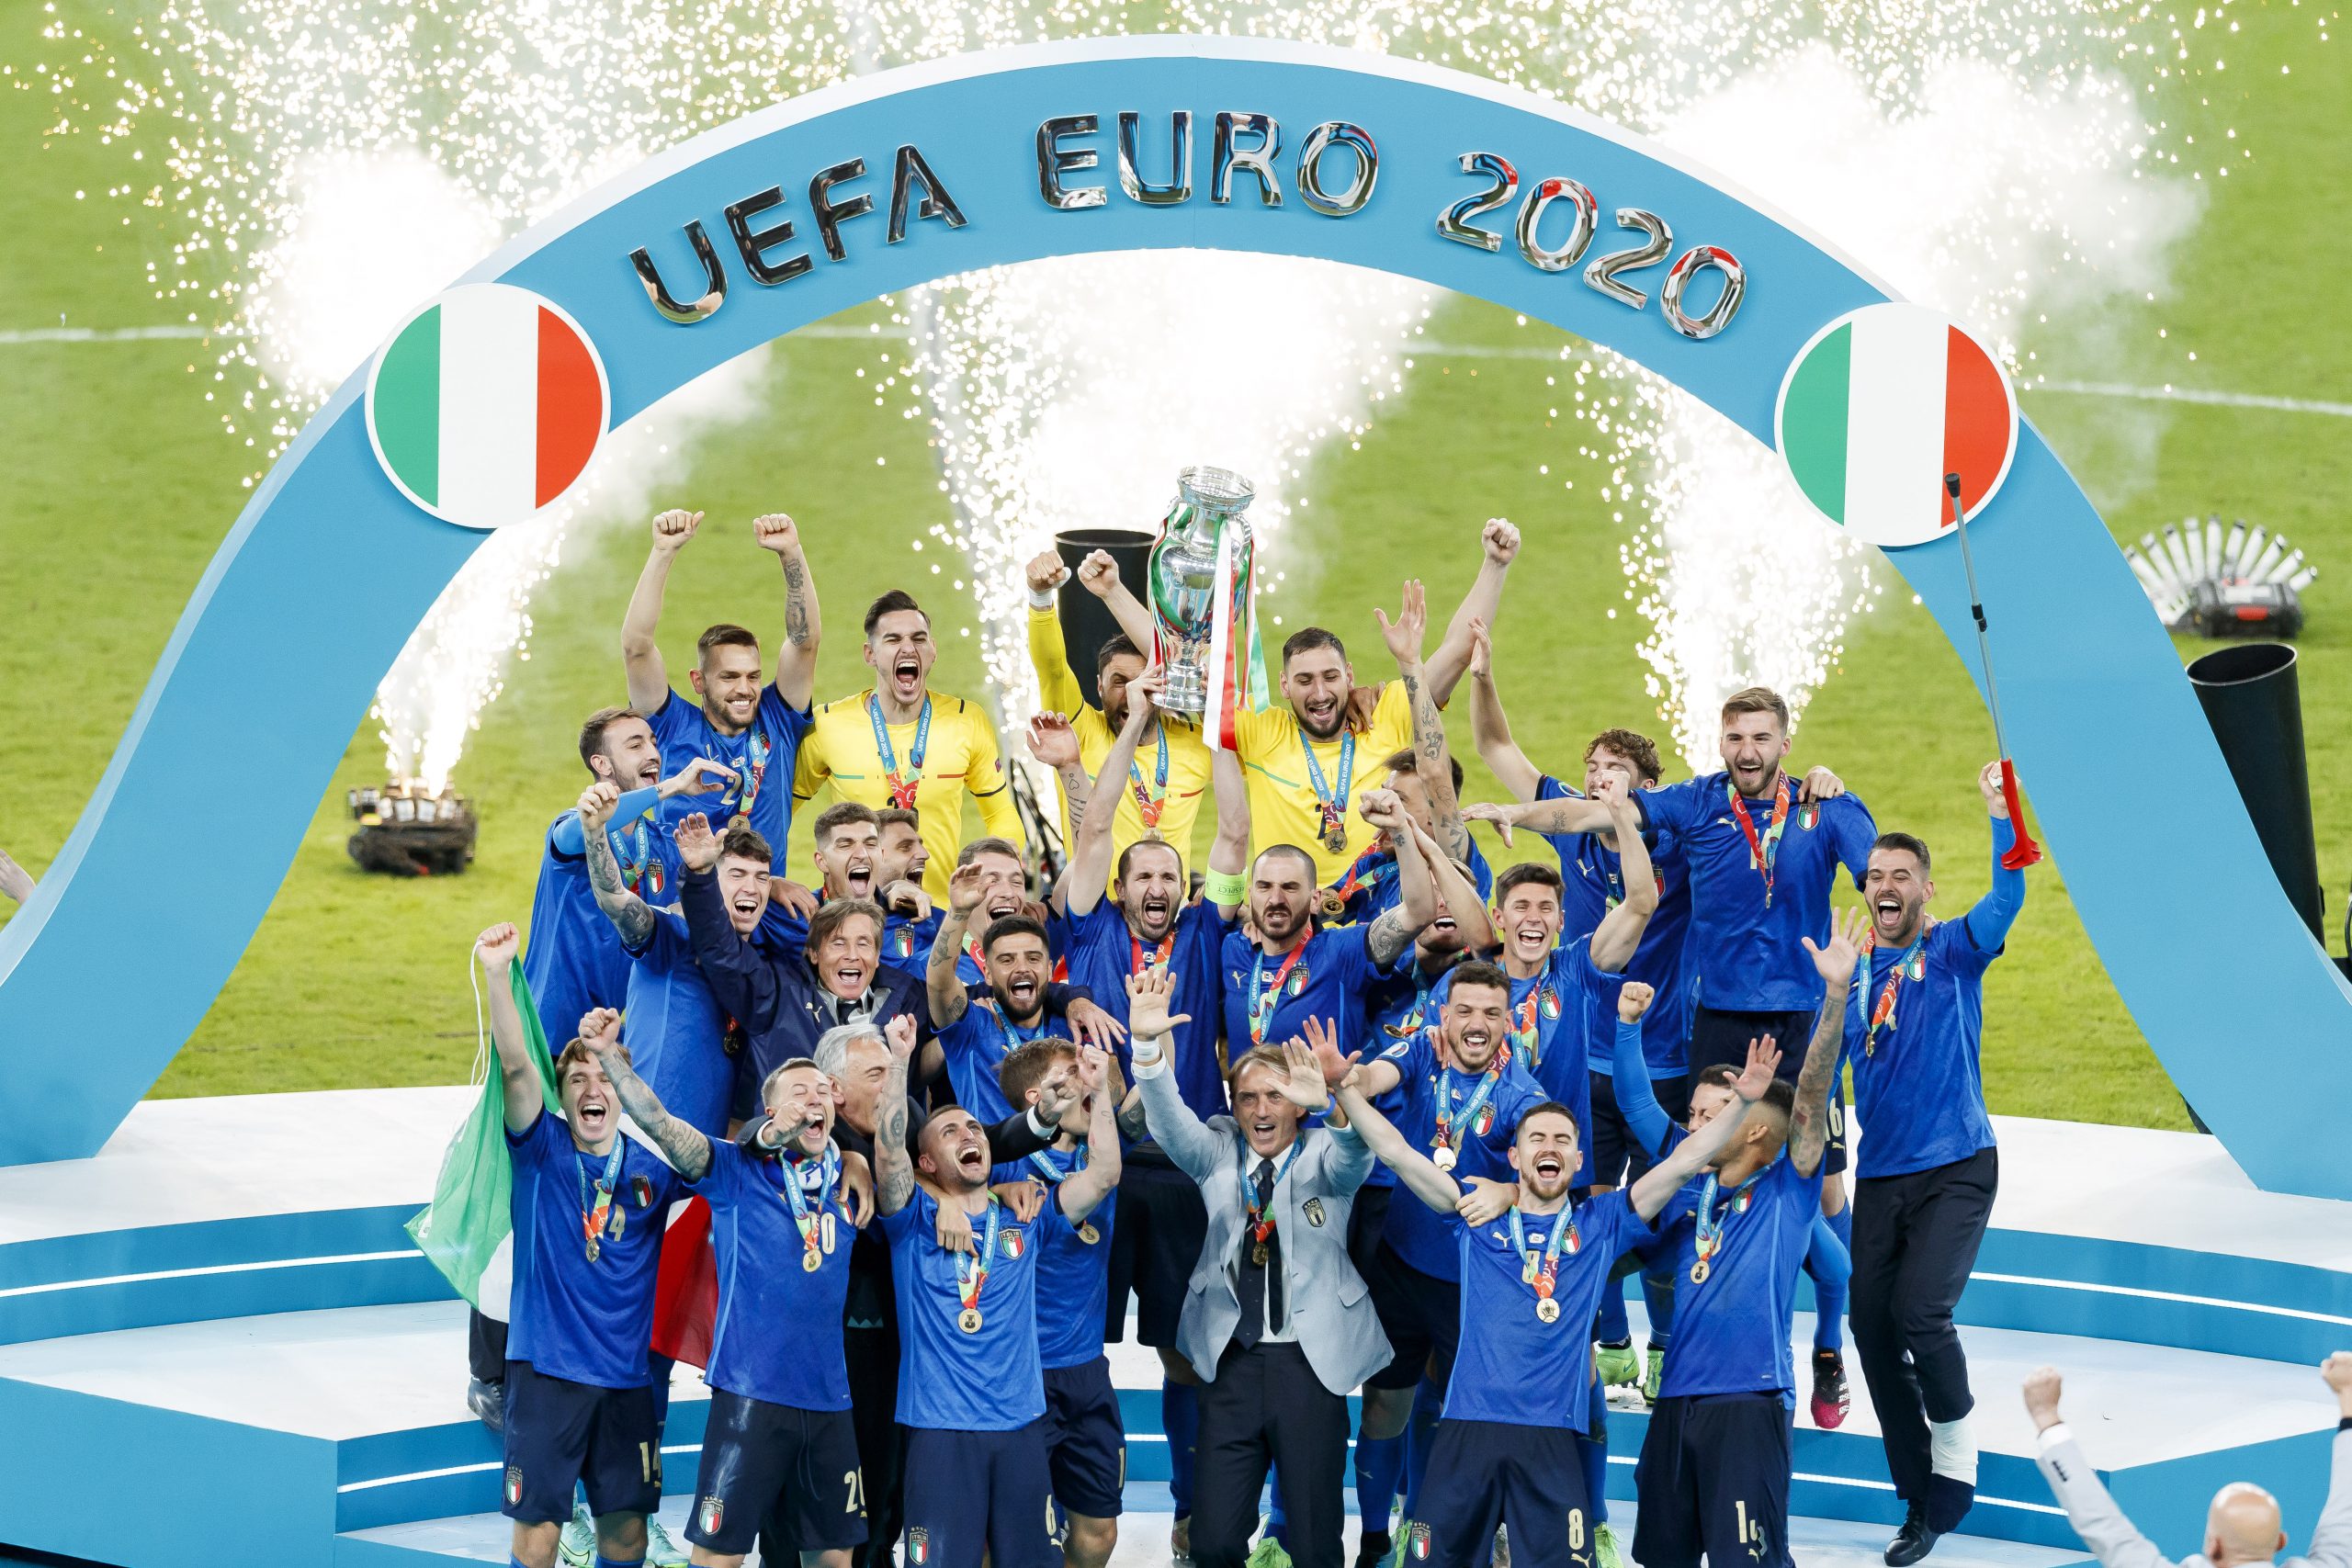 EURO 2020: Donnarumma królem Wembley! Bella Italia mistrzem Europy!